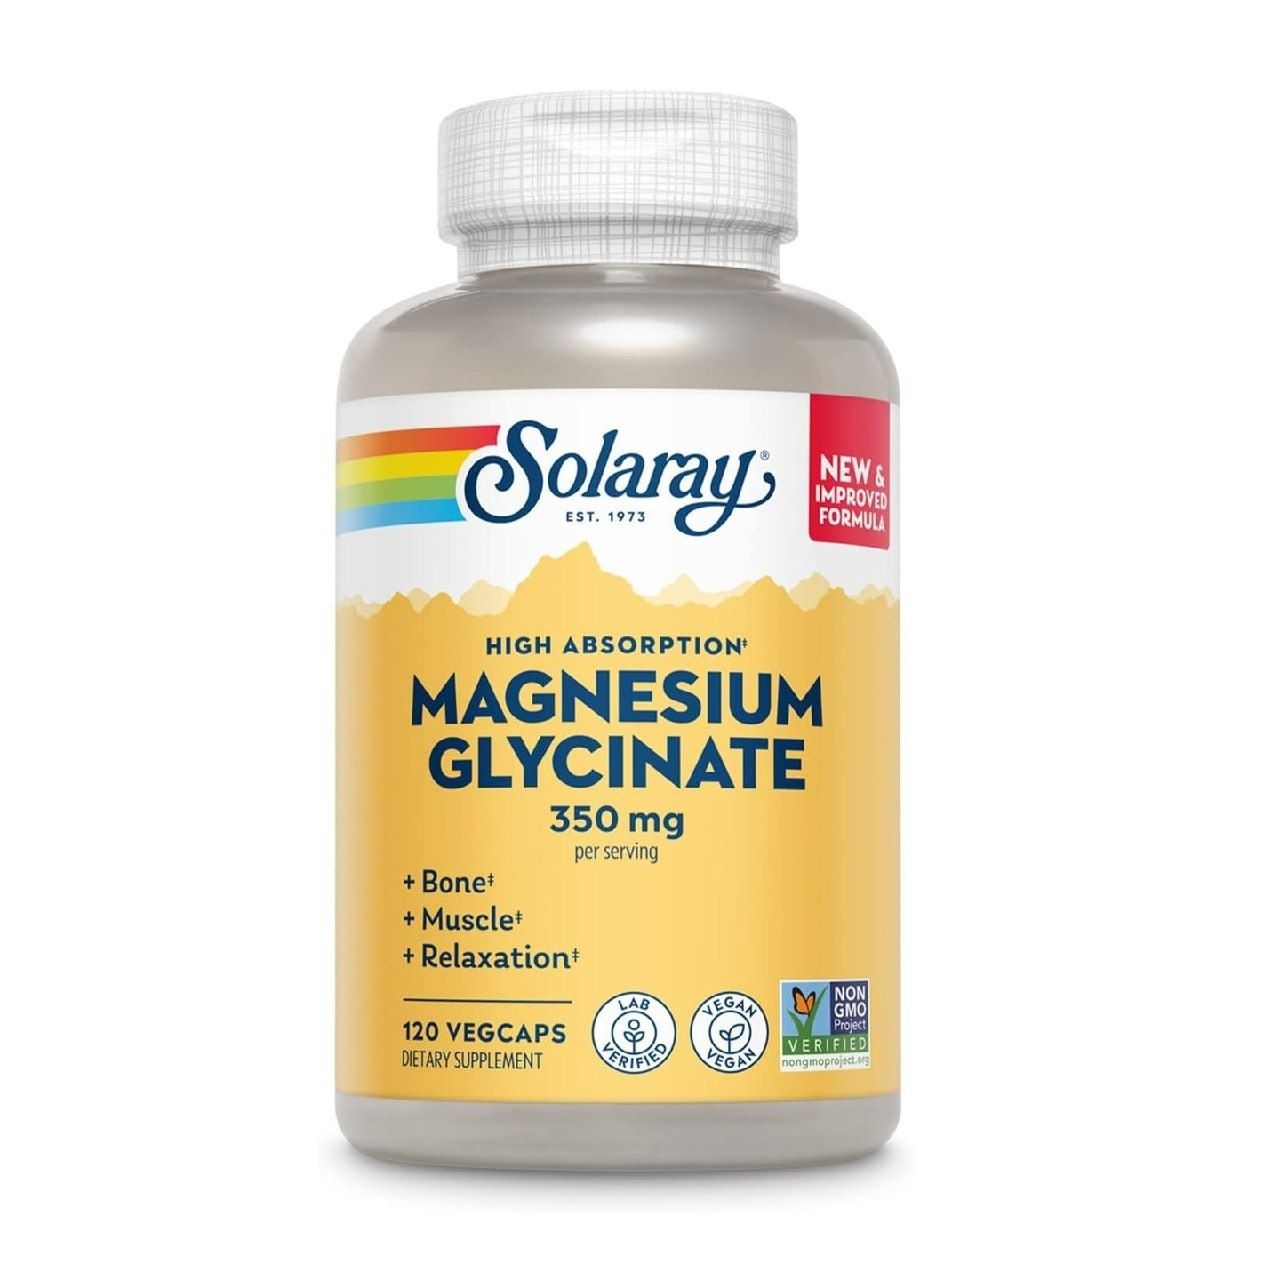 Solaray Magnesium Glycinate, новый и улучшенный полностью хелатный бис